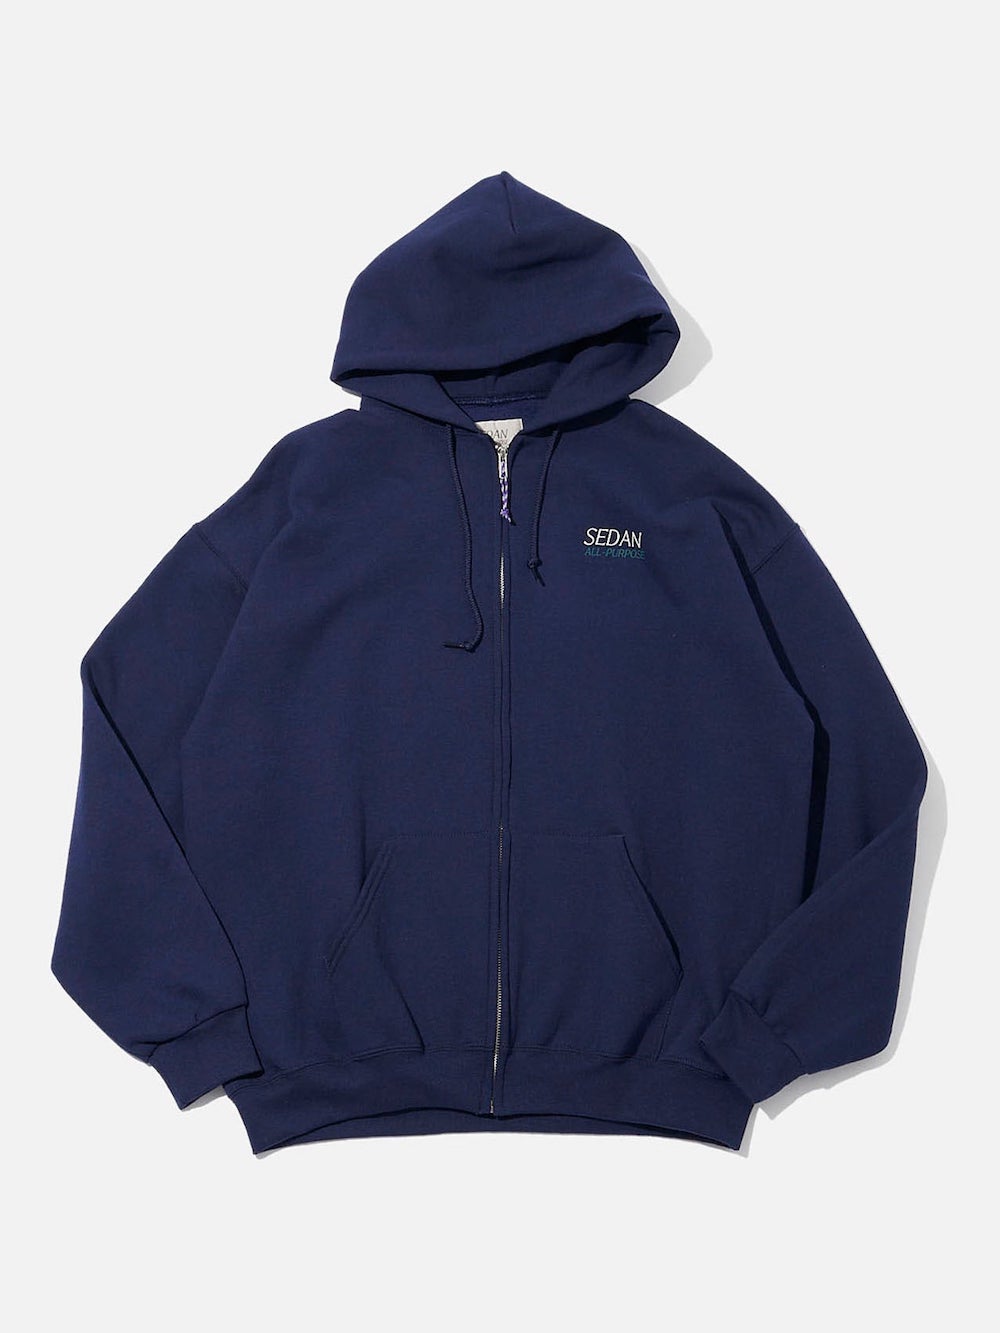 大量限定価格 leglazik vintage zip-up hoodie coat 80s - ジャケット ...